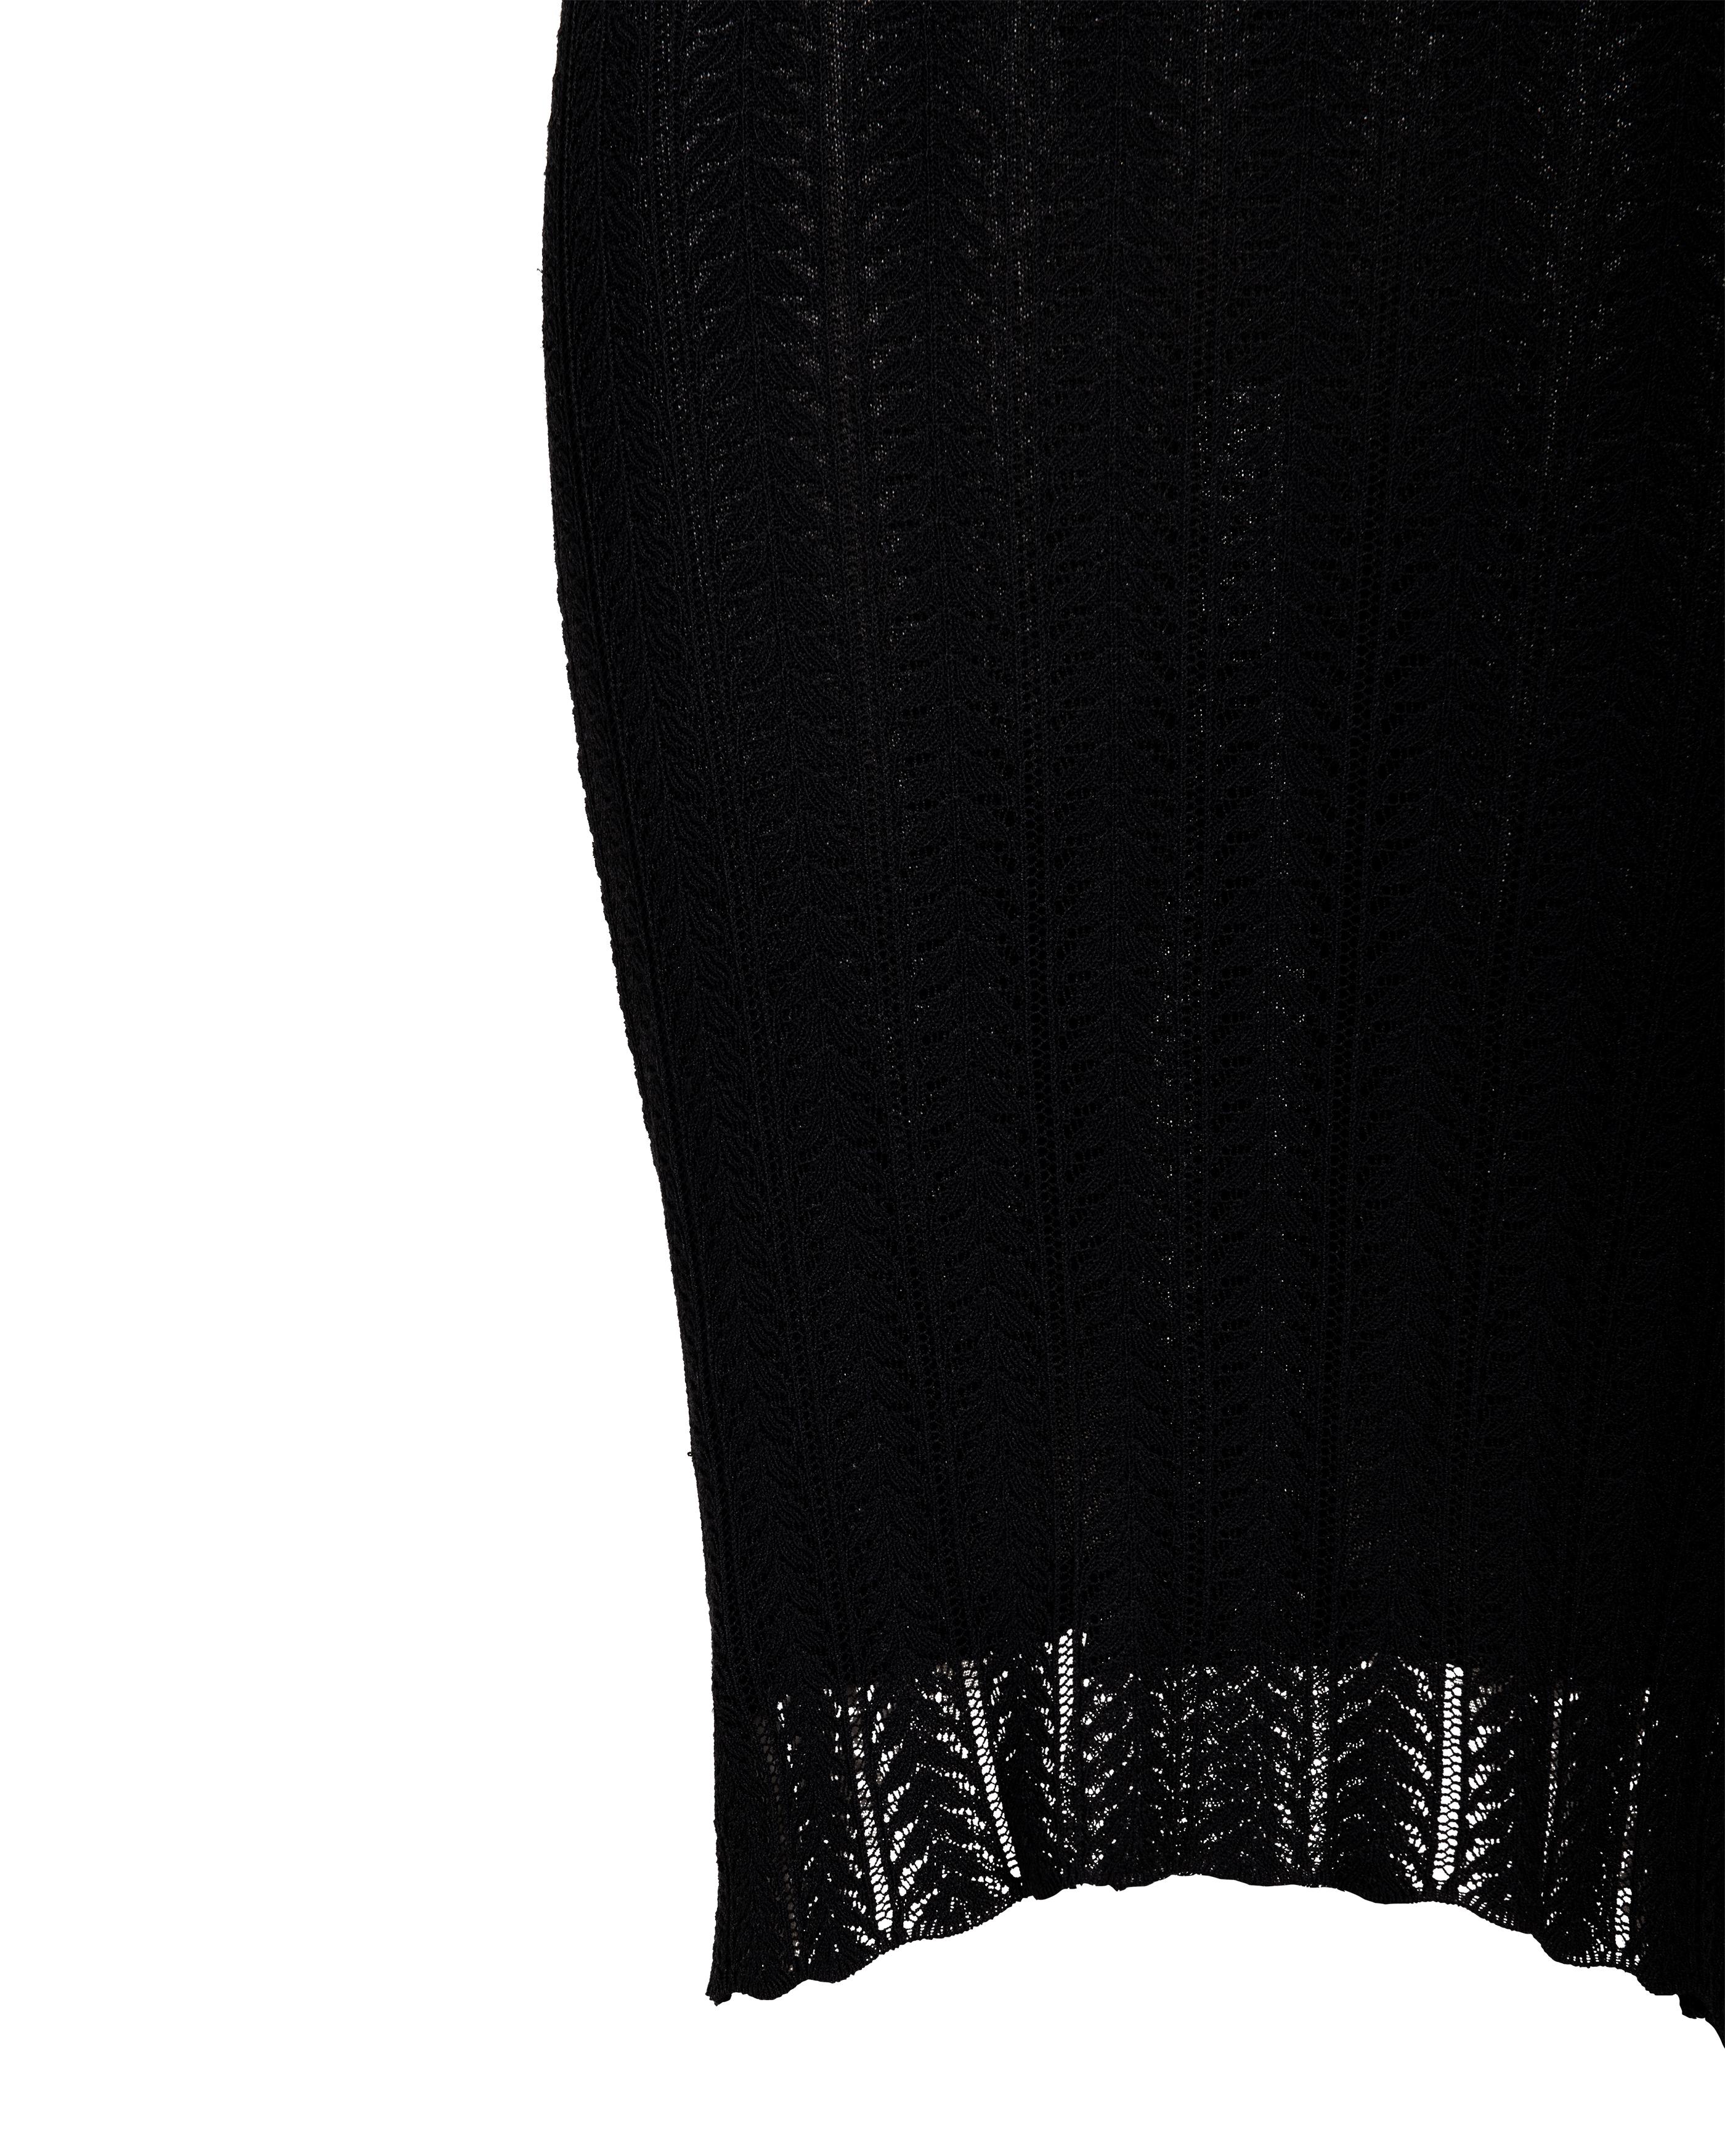 Resort 2000 John Galliano Black Openwork Knit Knee-Length Slip Dress For Sale 3